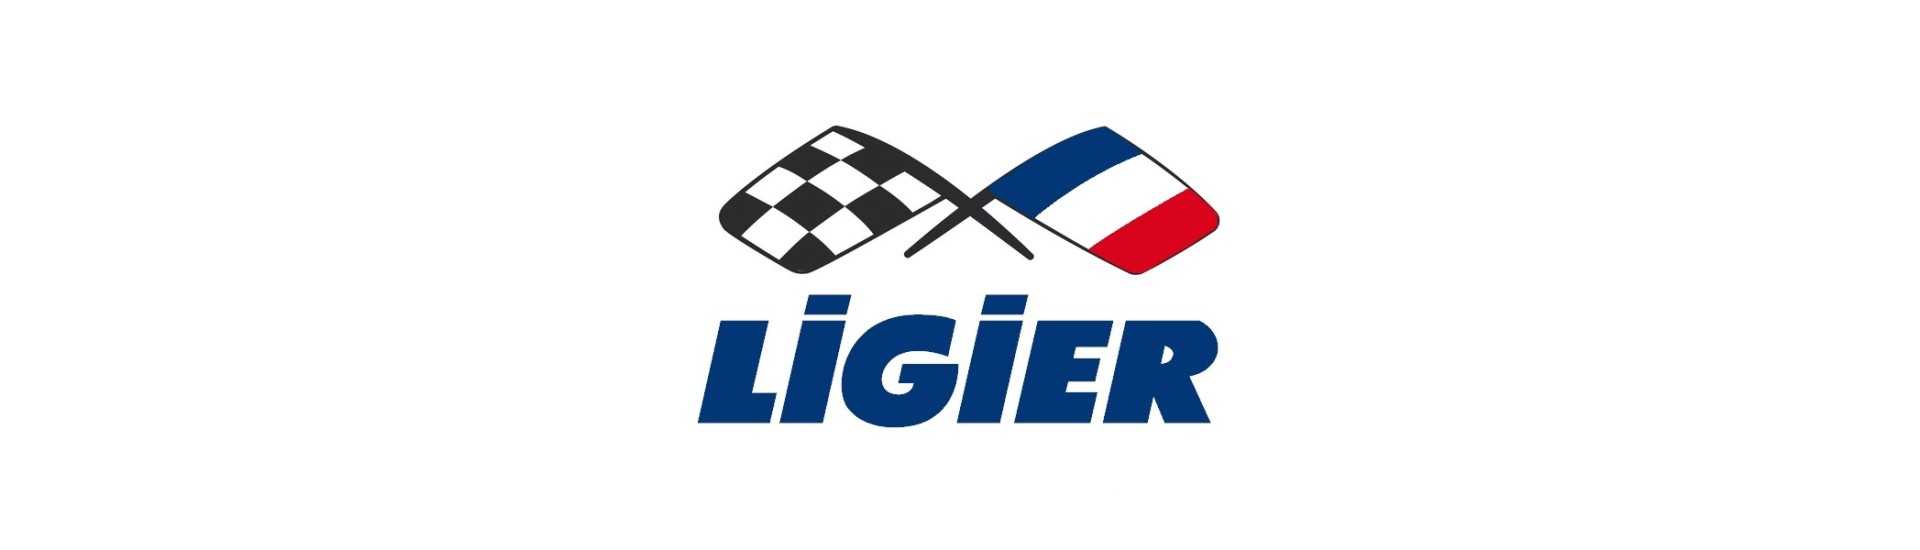 Commodo-suojus parhaaseen hintaan autolle ilman ajokorttia Ligier